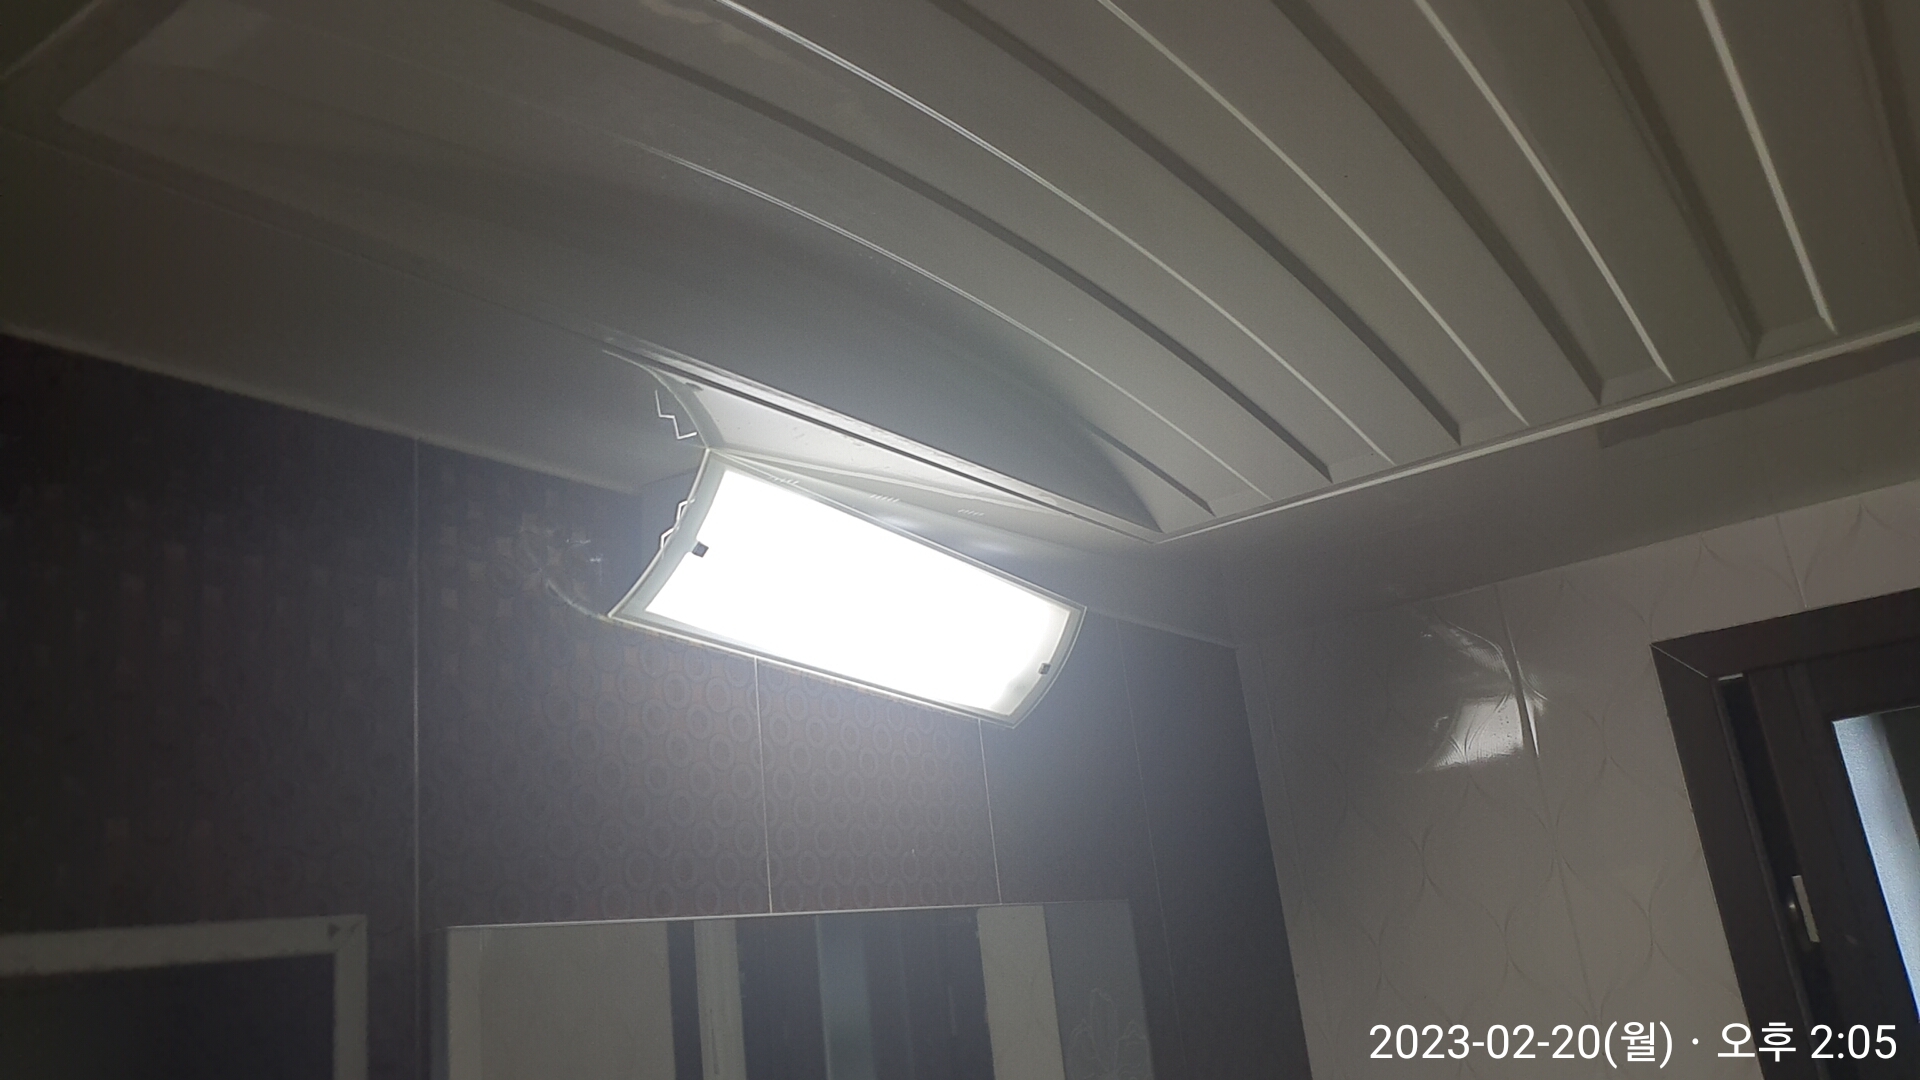 욕실 형광등 교체가 완료된 사진